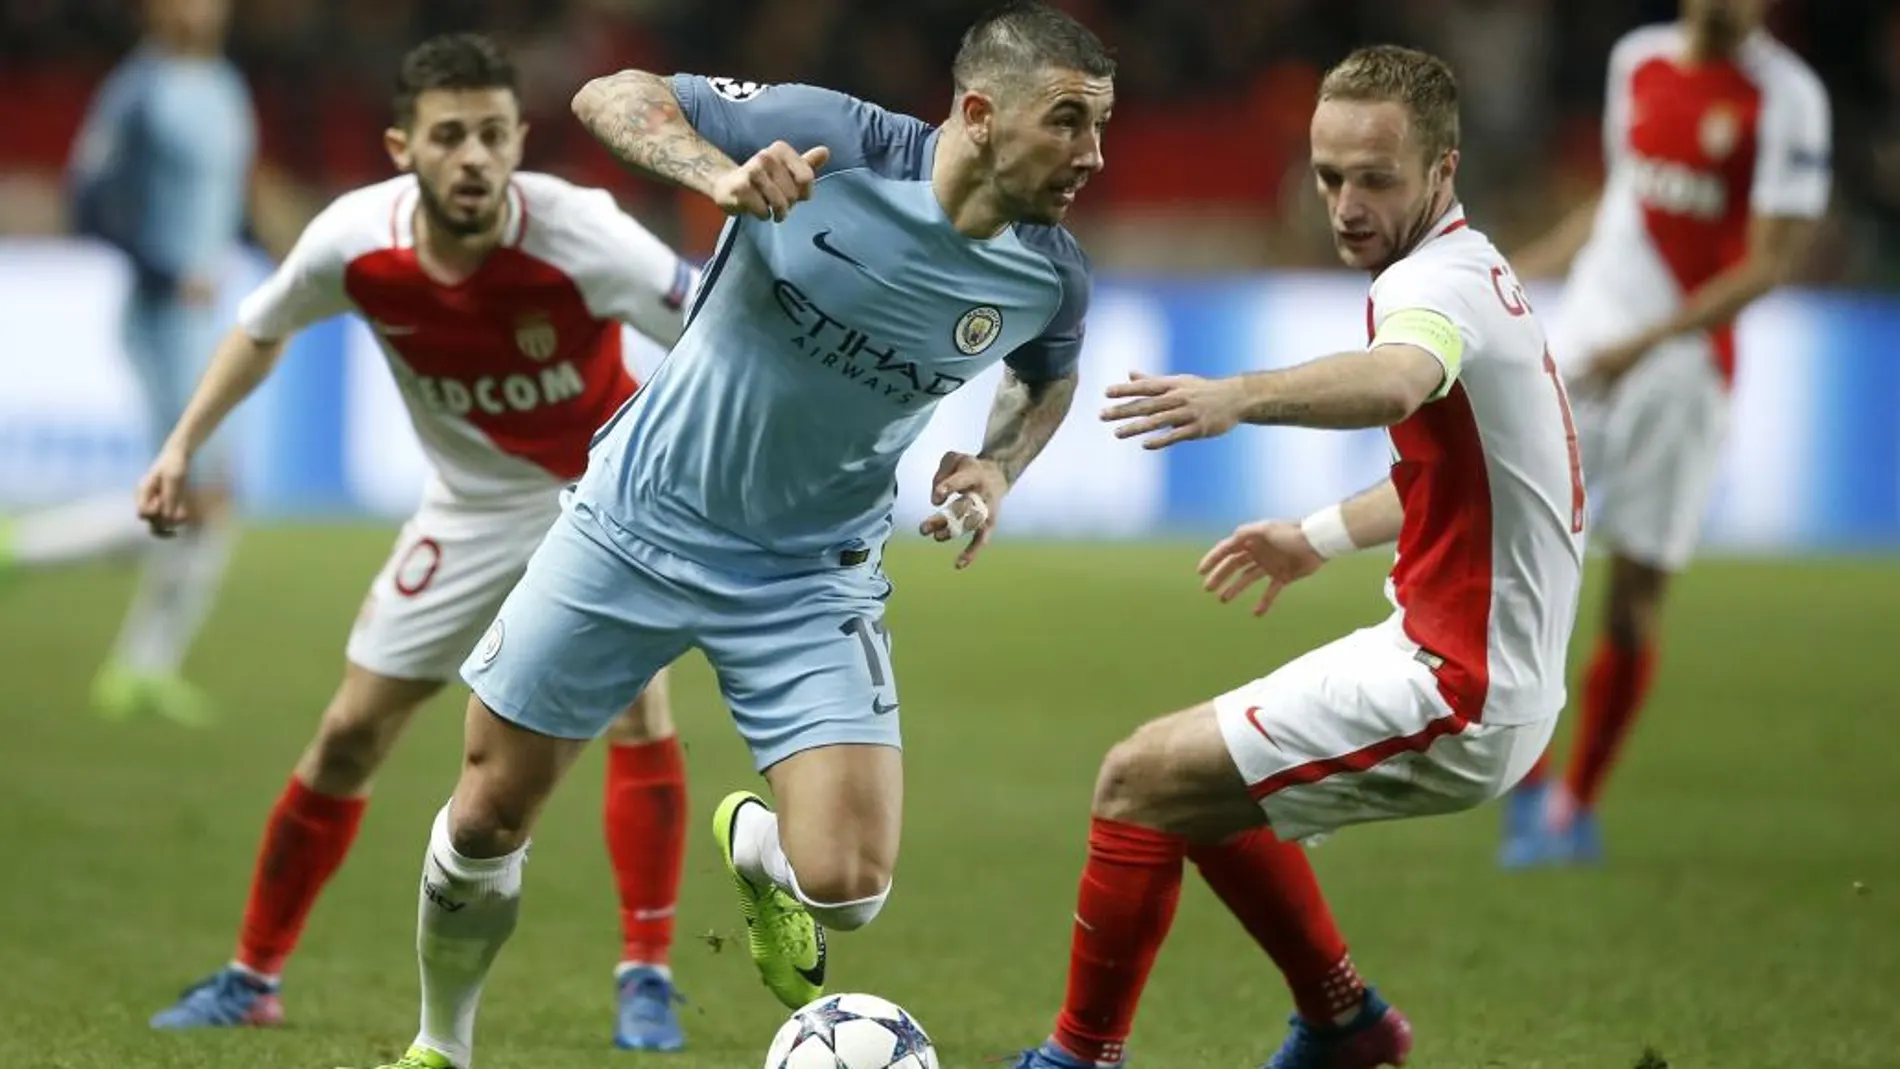 Kolarov (c) de Manchester City disputa el balón con Bernardo Silva